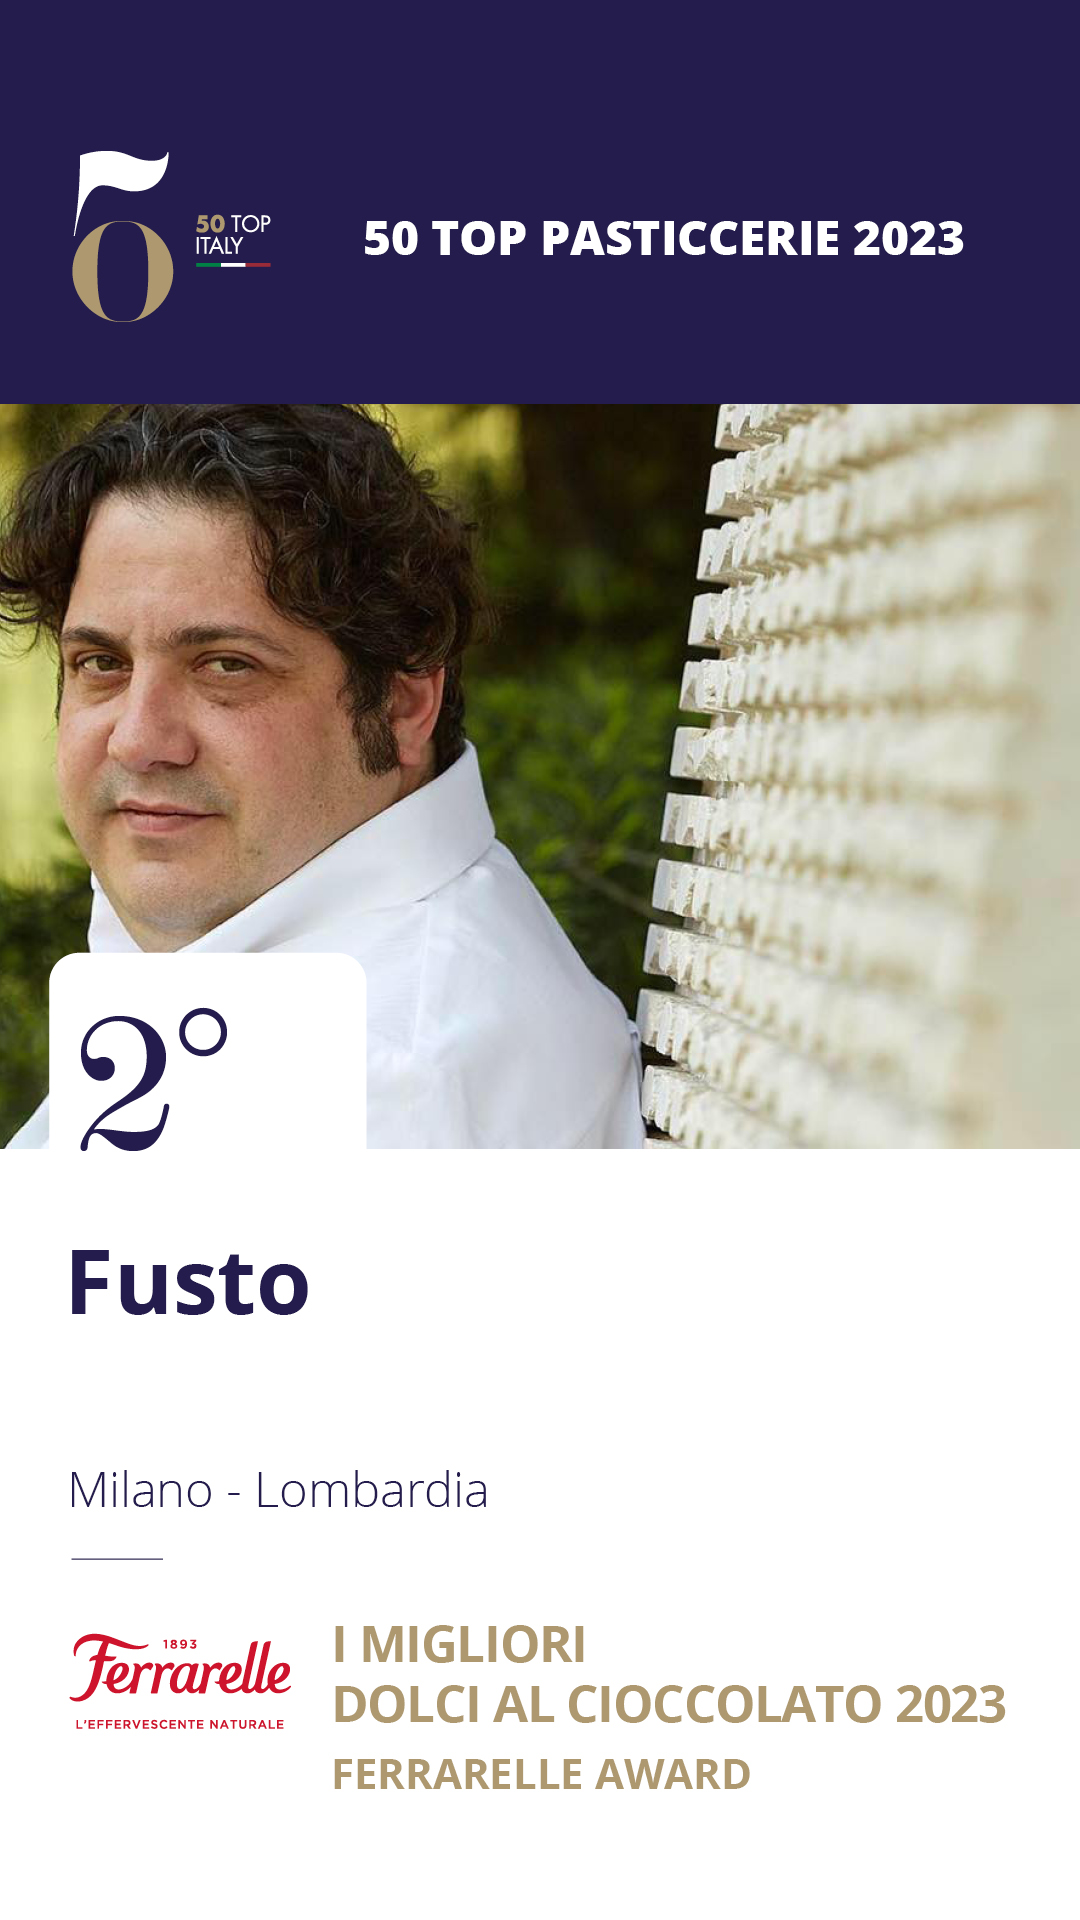 2. Fusto – Milano, Lombardia